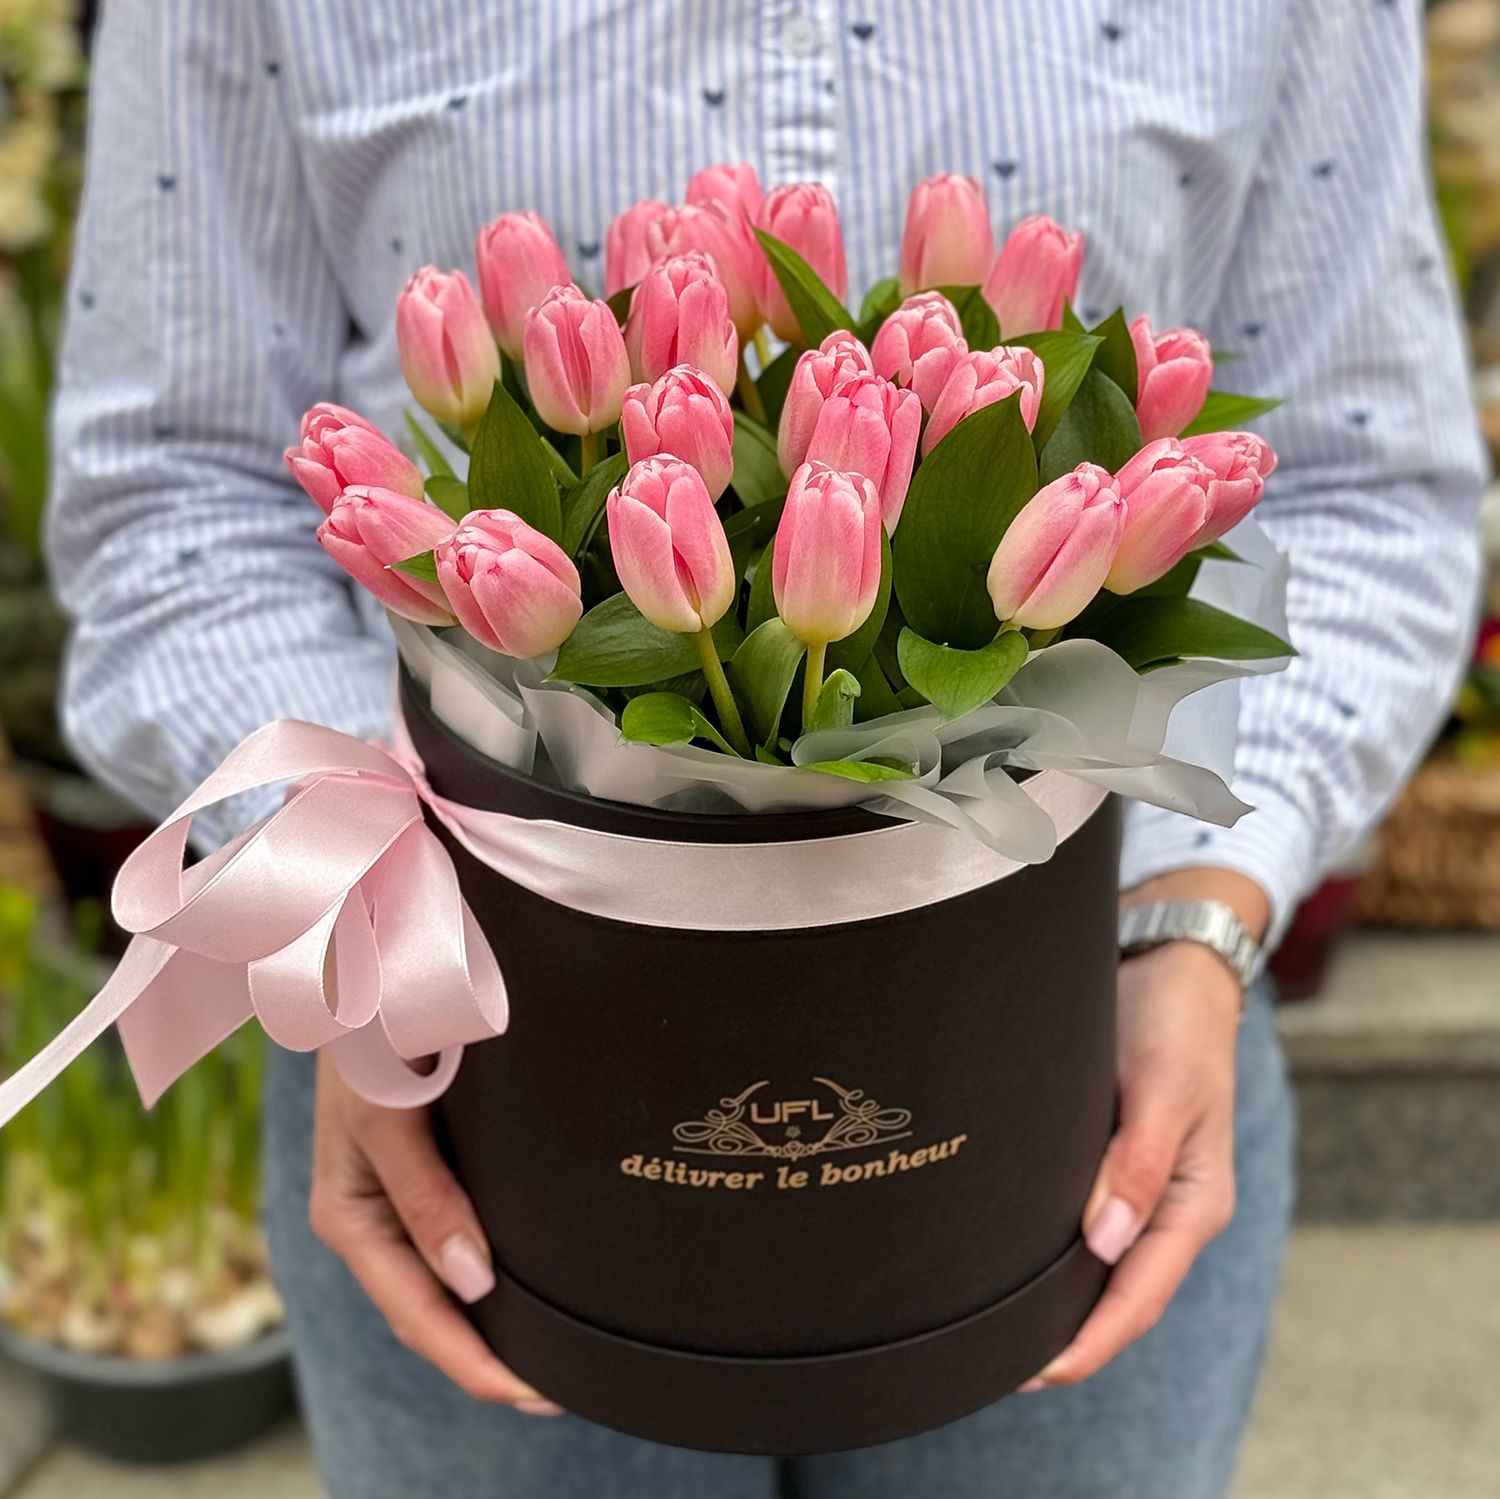 25 розовых тюльпанов в коробке